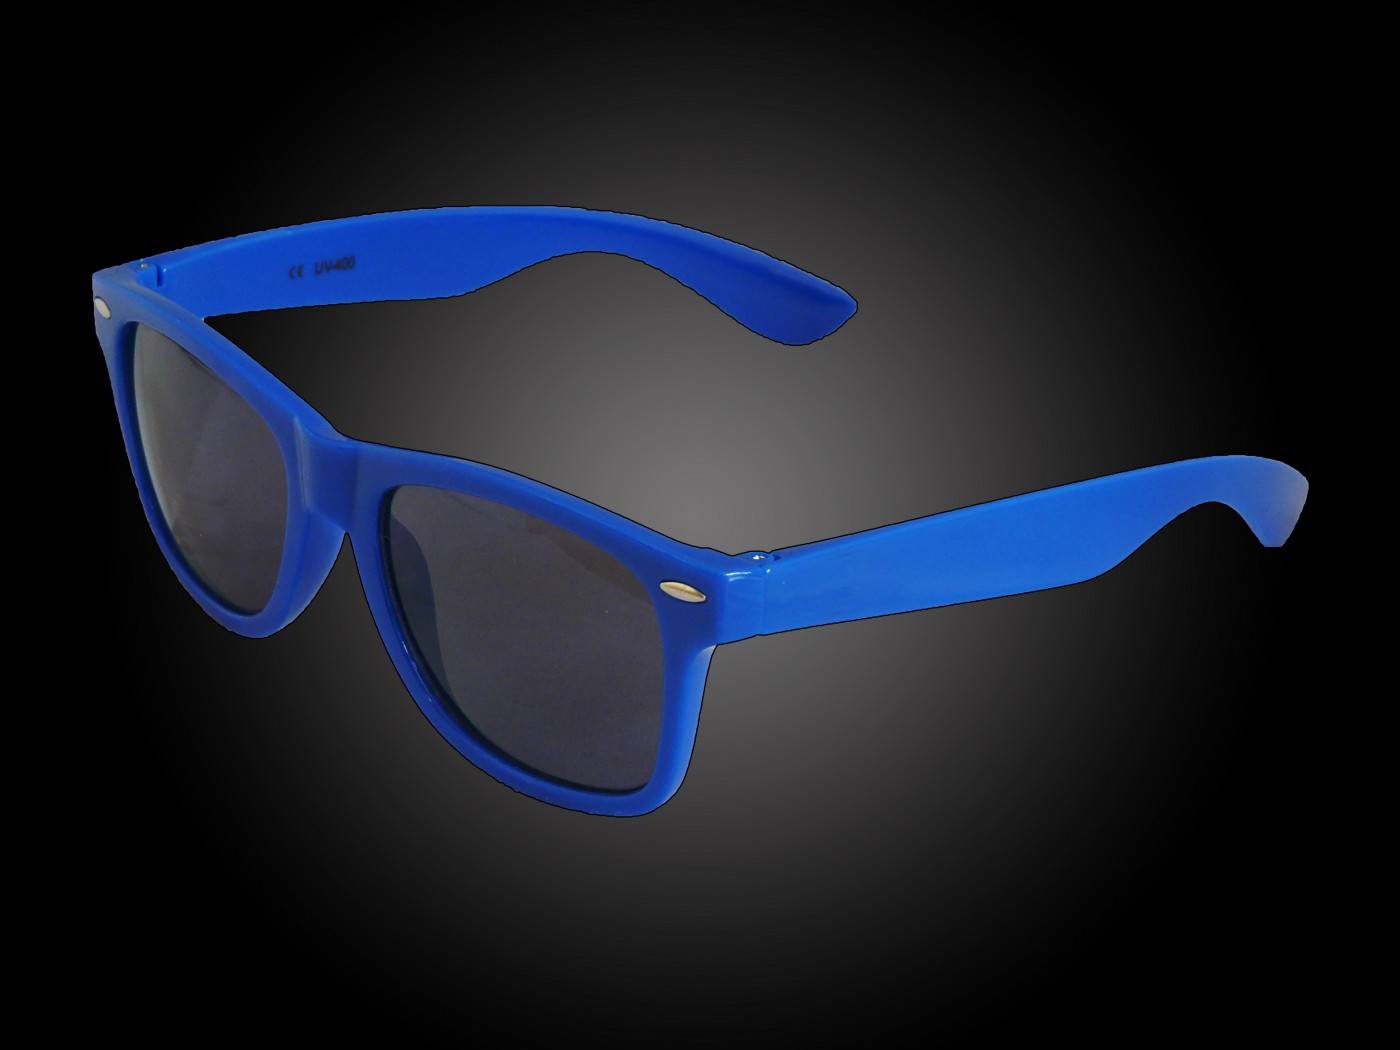 Blauwe zonnebrillen bedrukt festivalbril